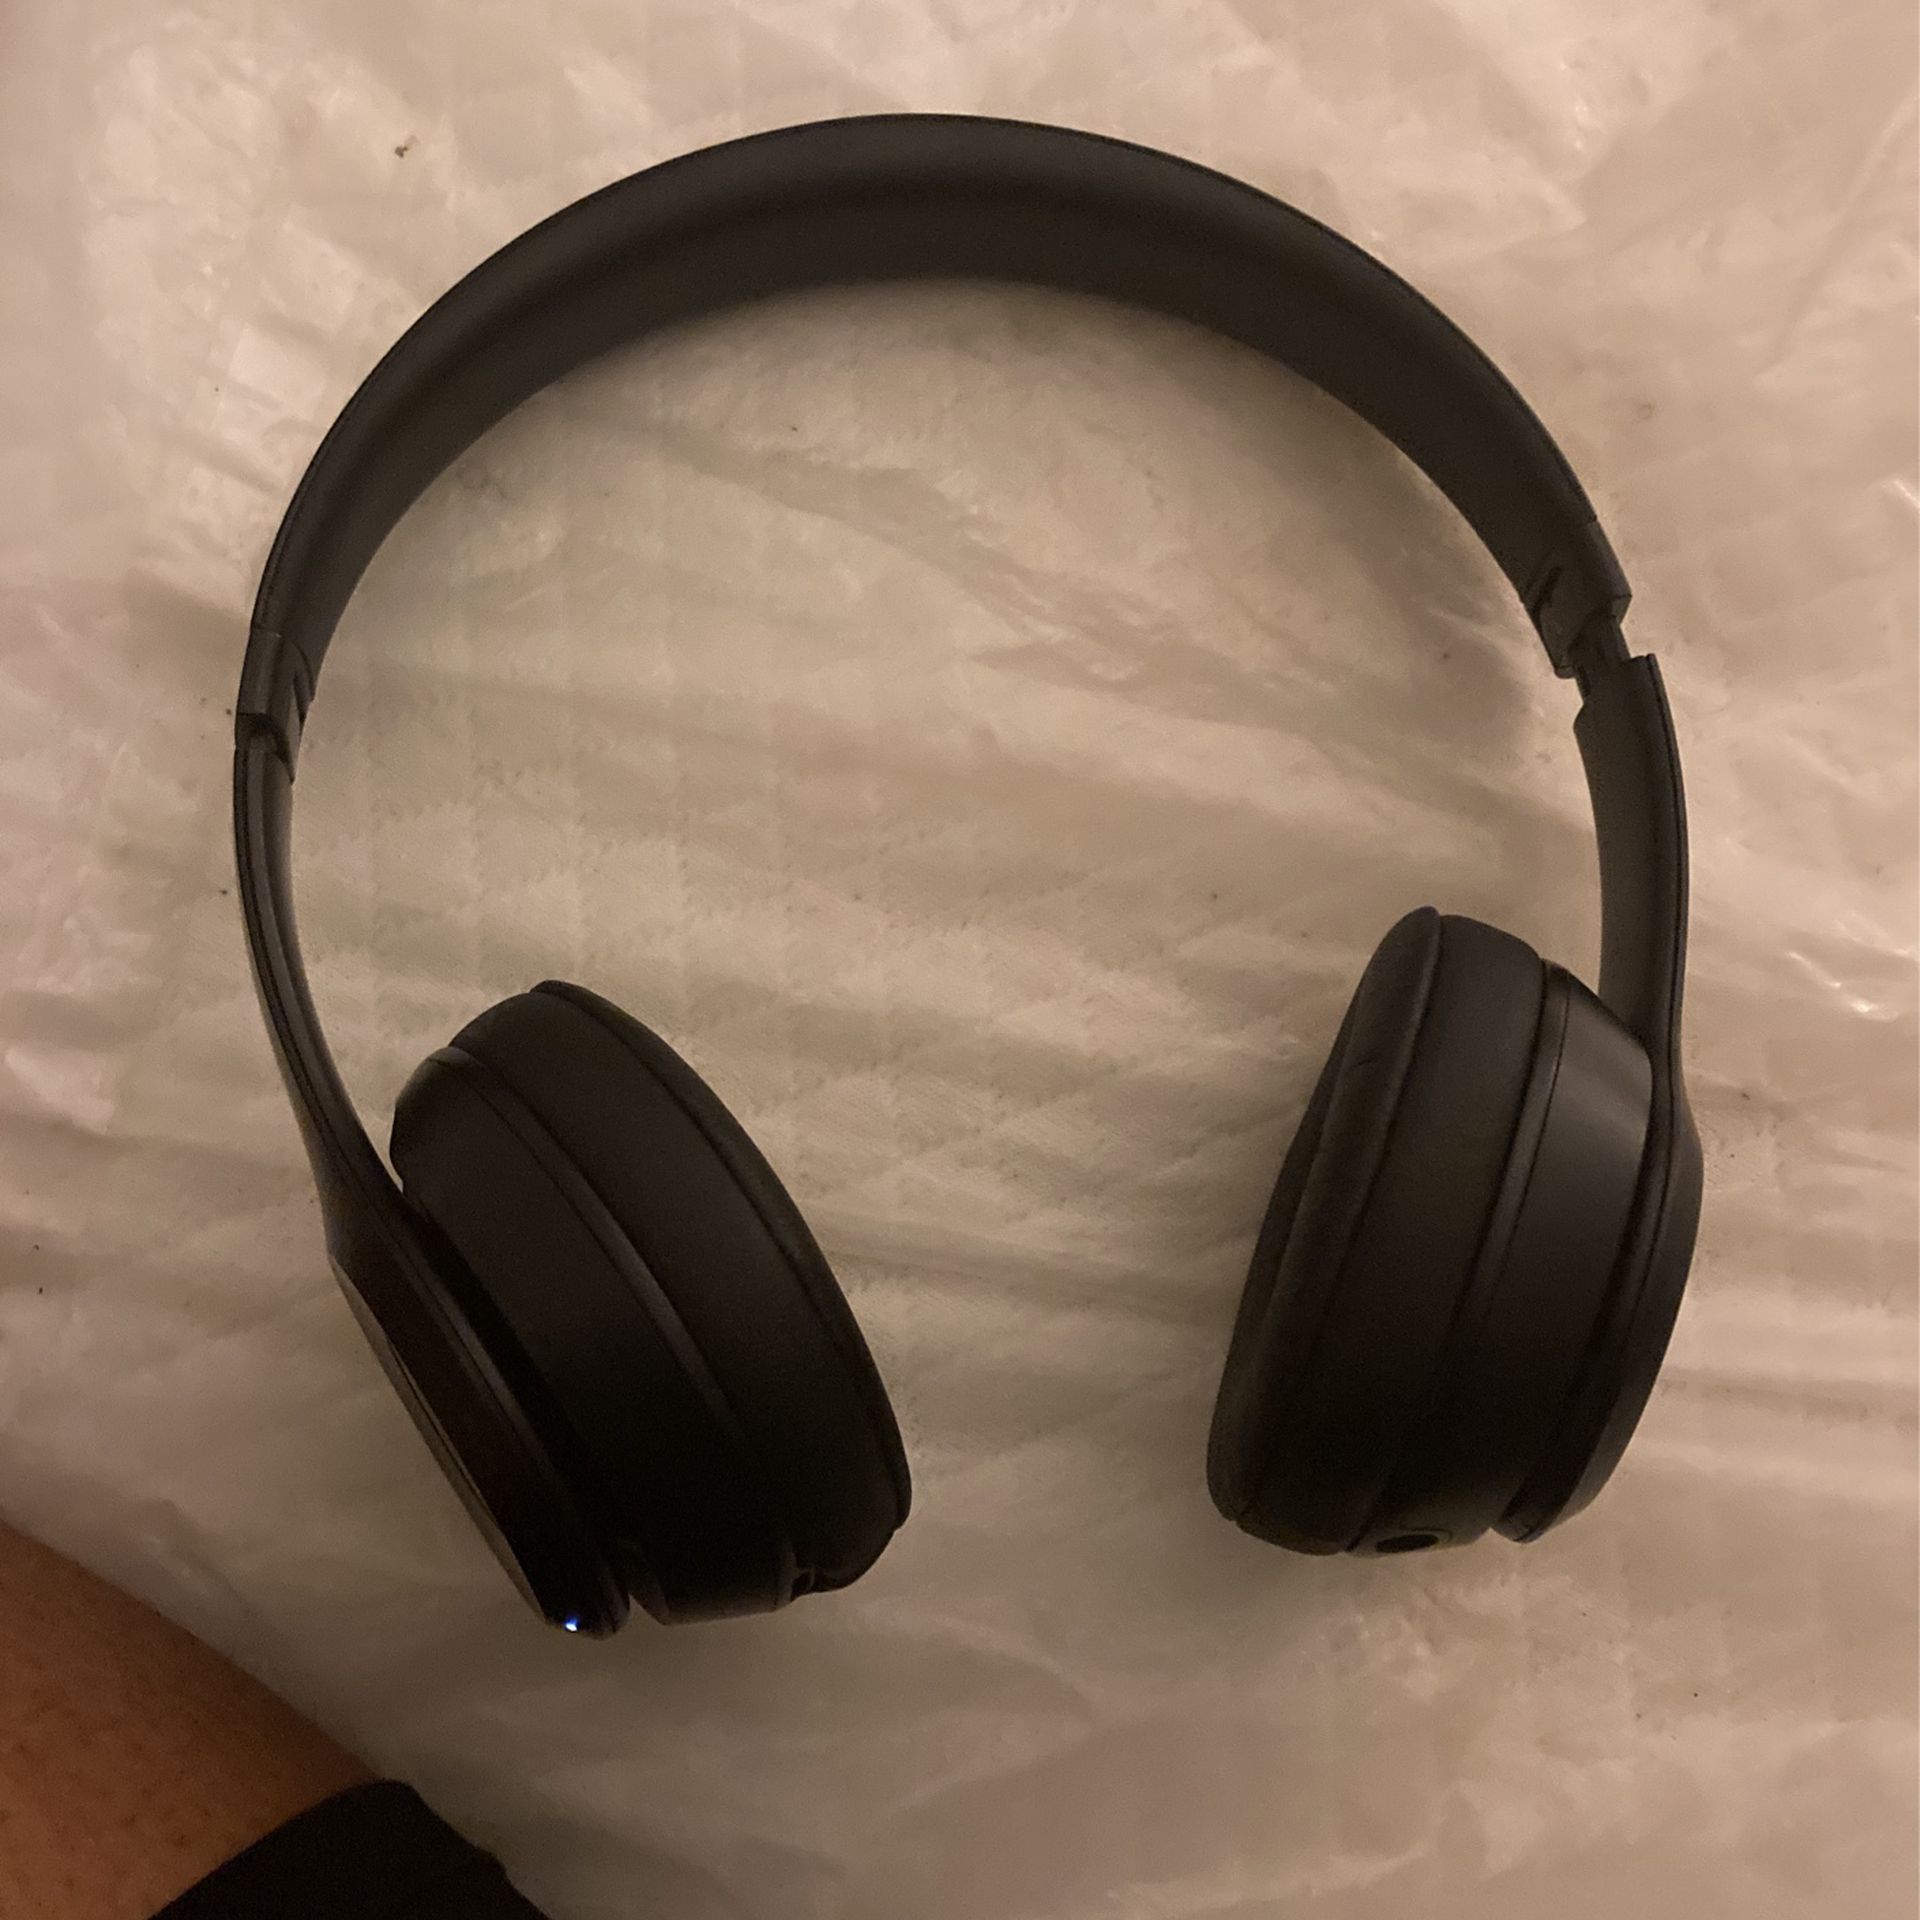 Beats Solo³ Bluetooth Wireless On-Ear Headphones